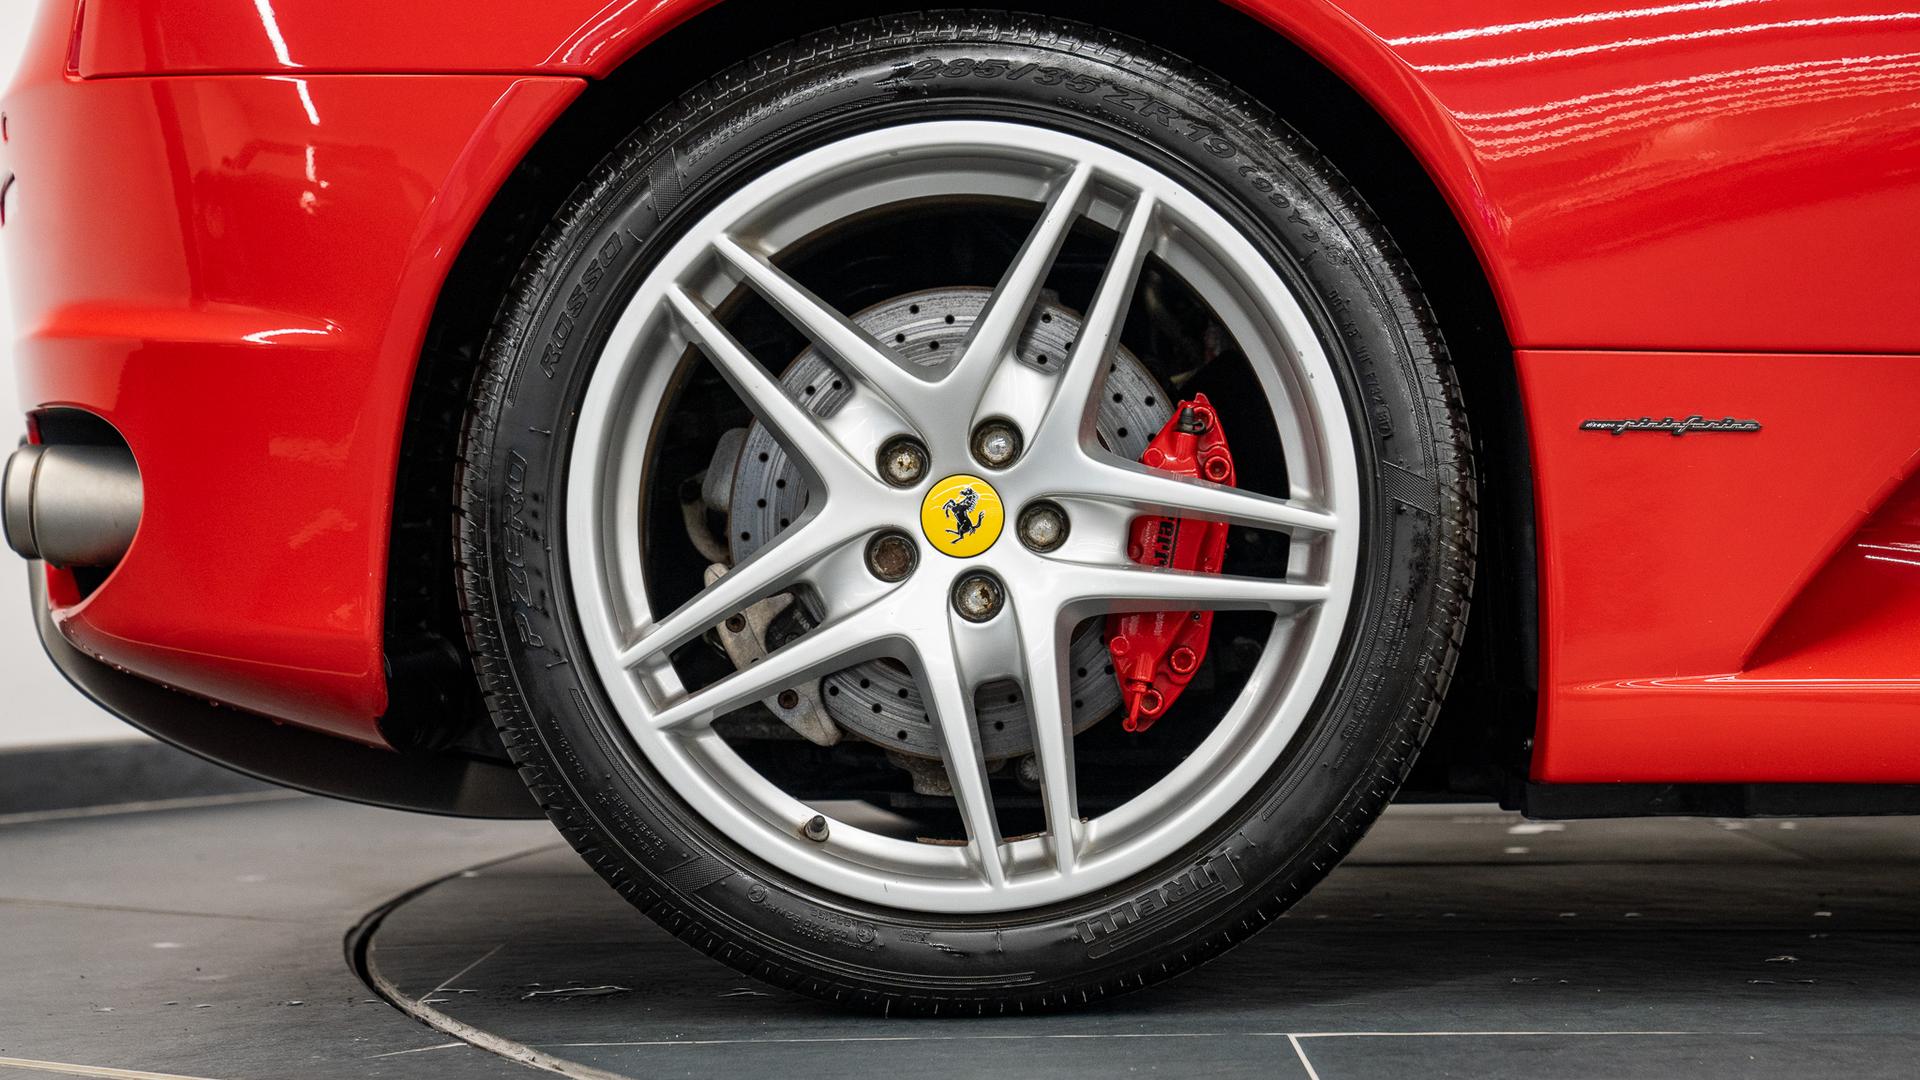 Ferrari F430 Photo 8531303a-8dfb-478d-9101-10bee88a47ae.jpg